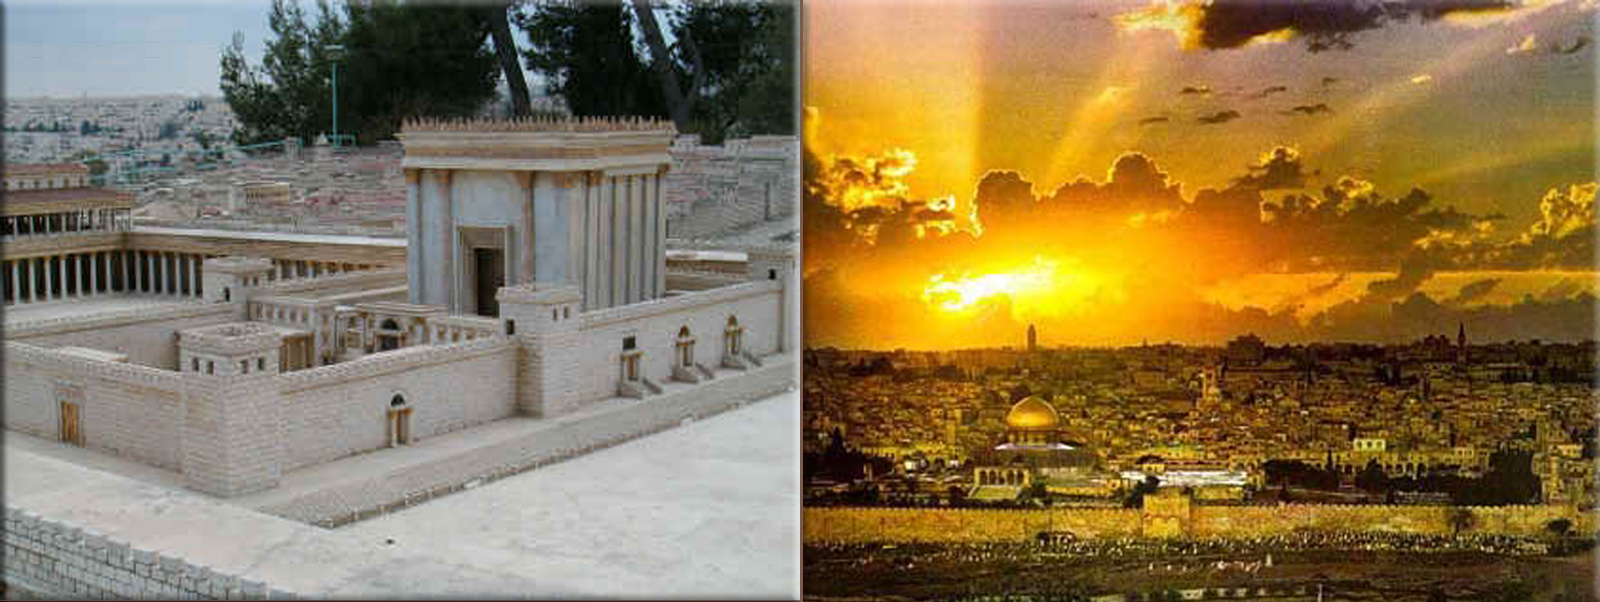 Solomon's Temple, Jerusalem